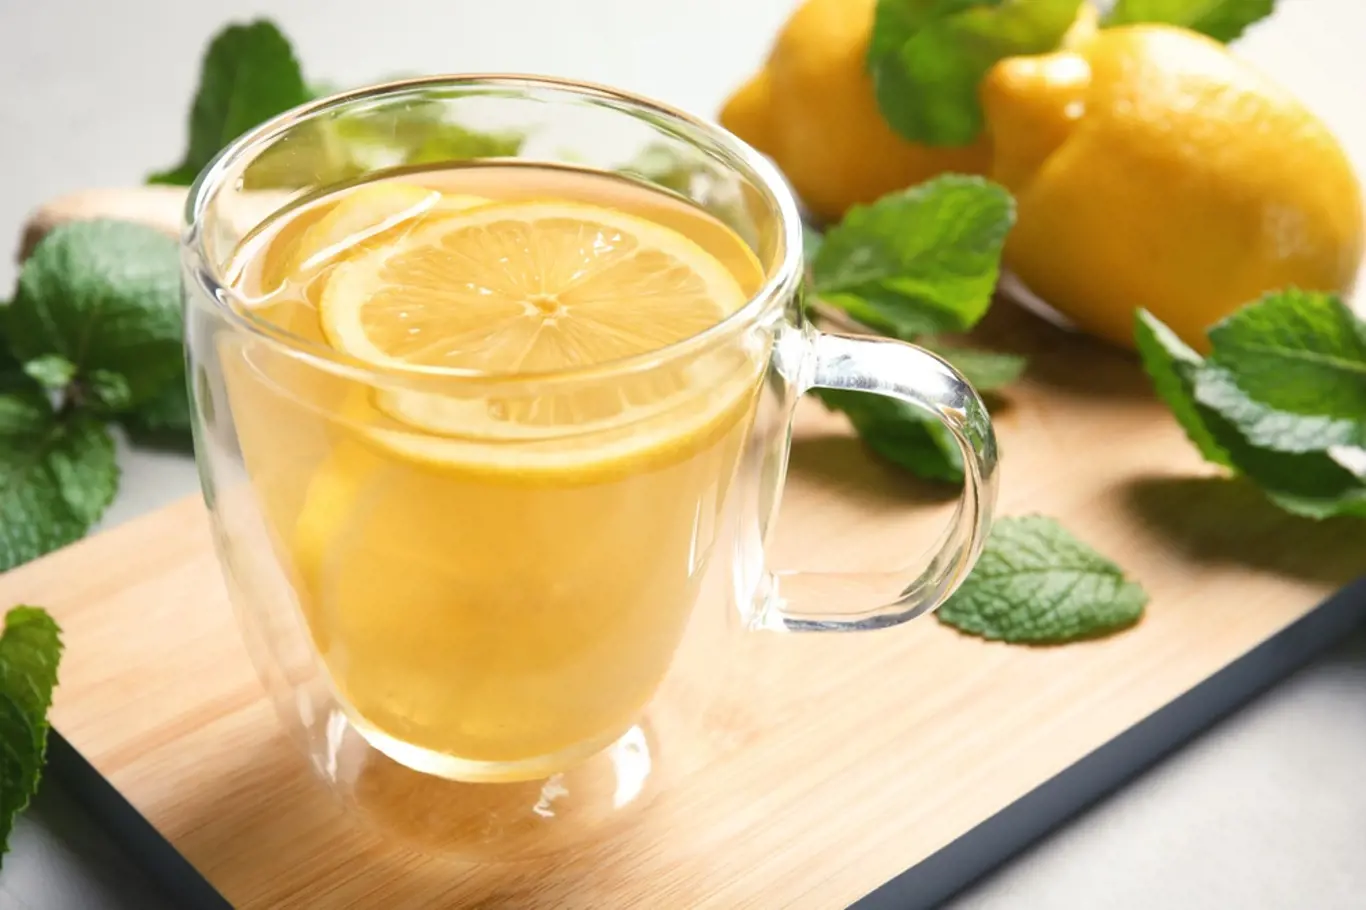 Opravdu voda s citrónem může nastartovat metabolismus